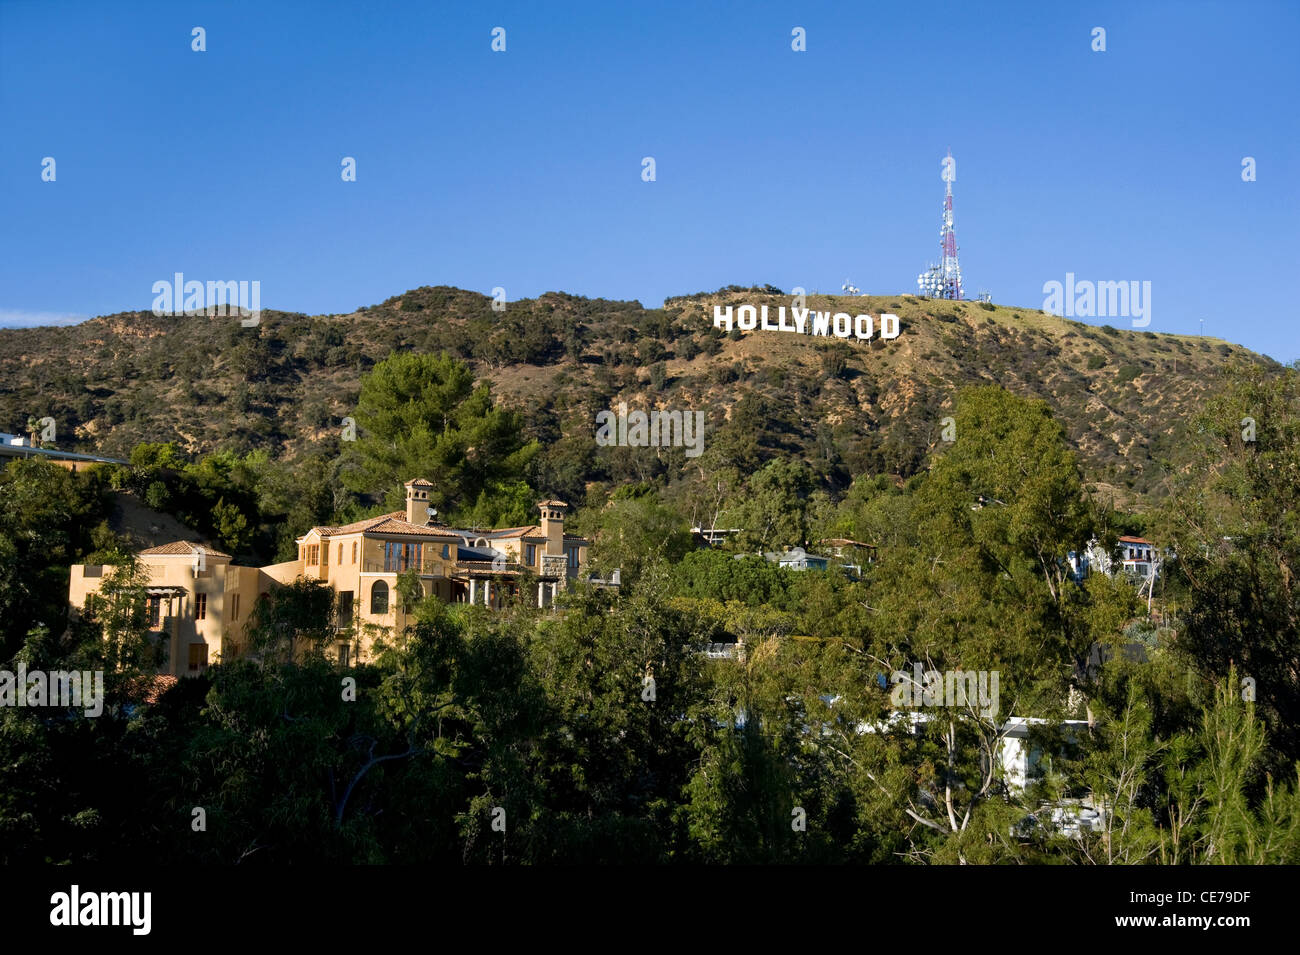 El famoso cartel de Hollywood en las colinas de Hollywood Foto de stock